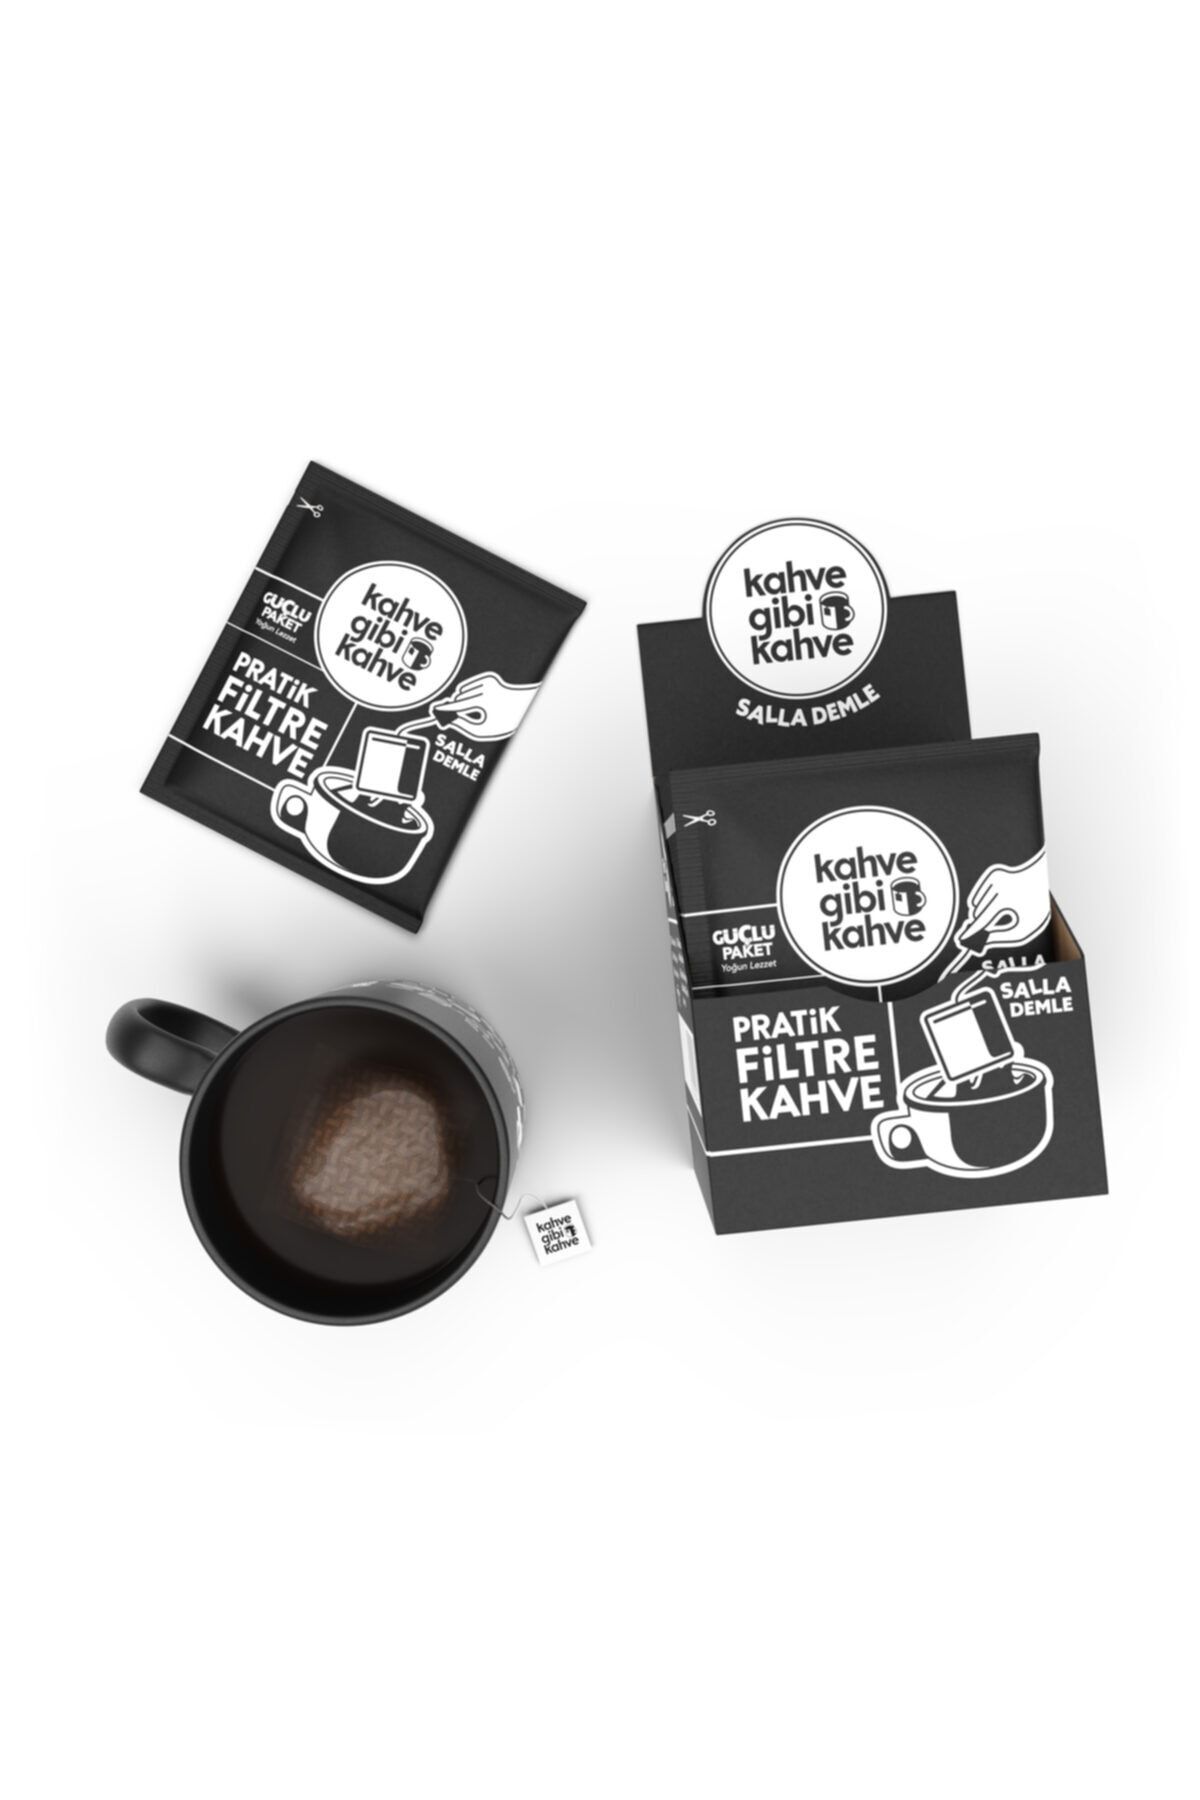 Kahvegibikahve Pratik Filtre Kahve 10'lu Güçlü Paket